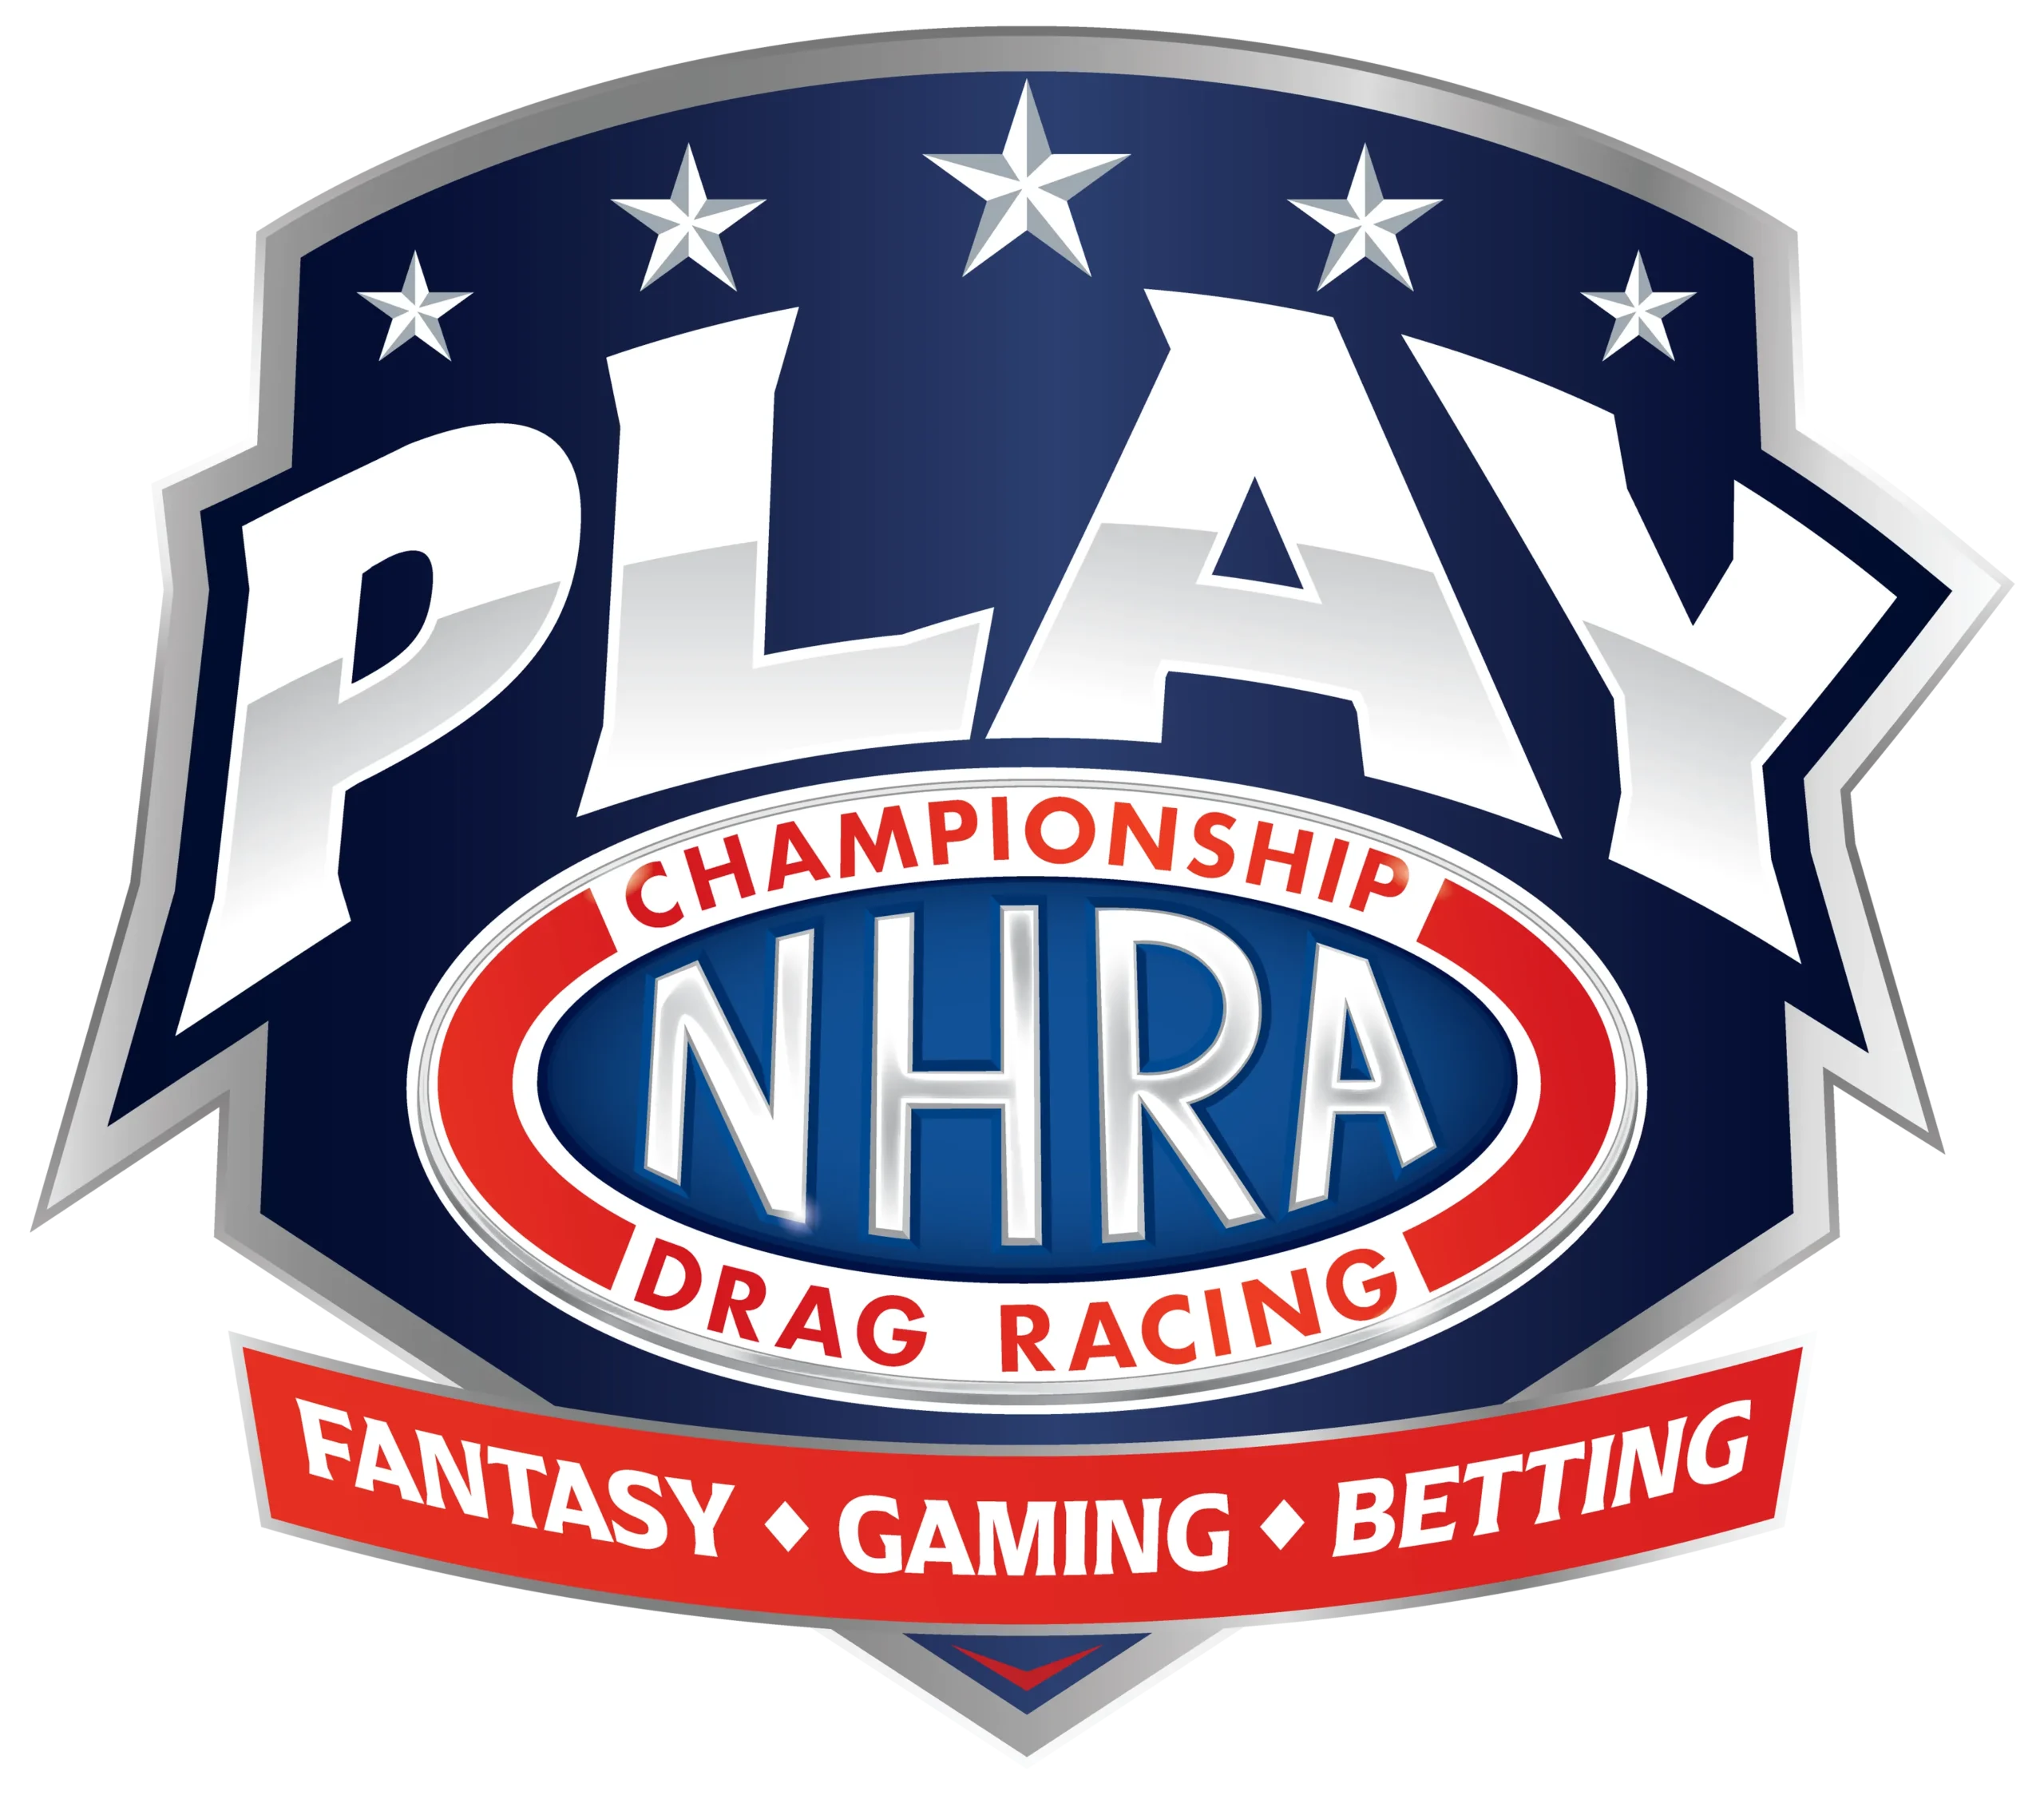 PLAY NHRA | Championship Drag Racing | Fantasy, Gaming & Betting